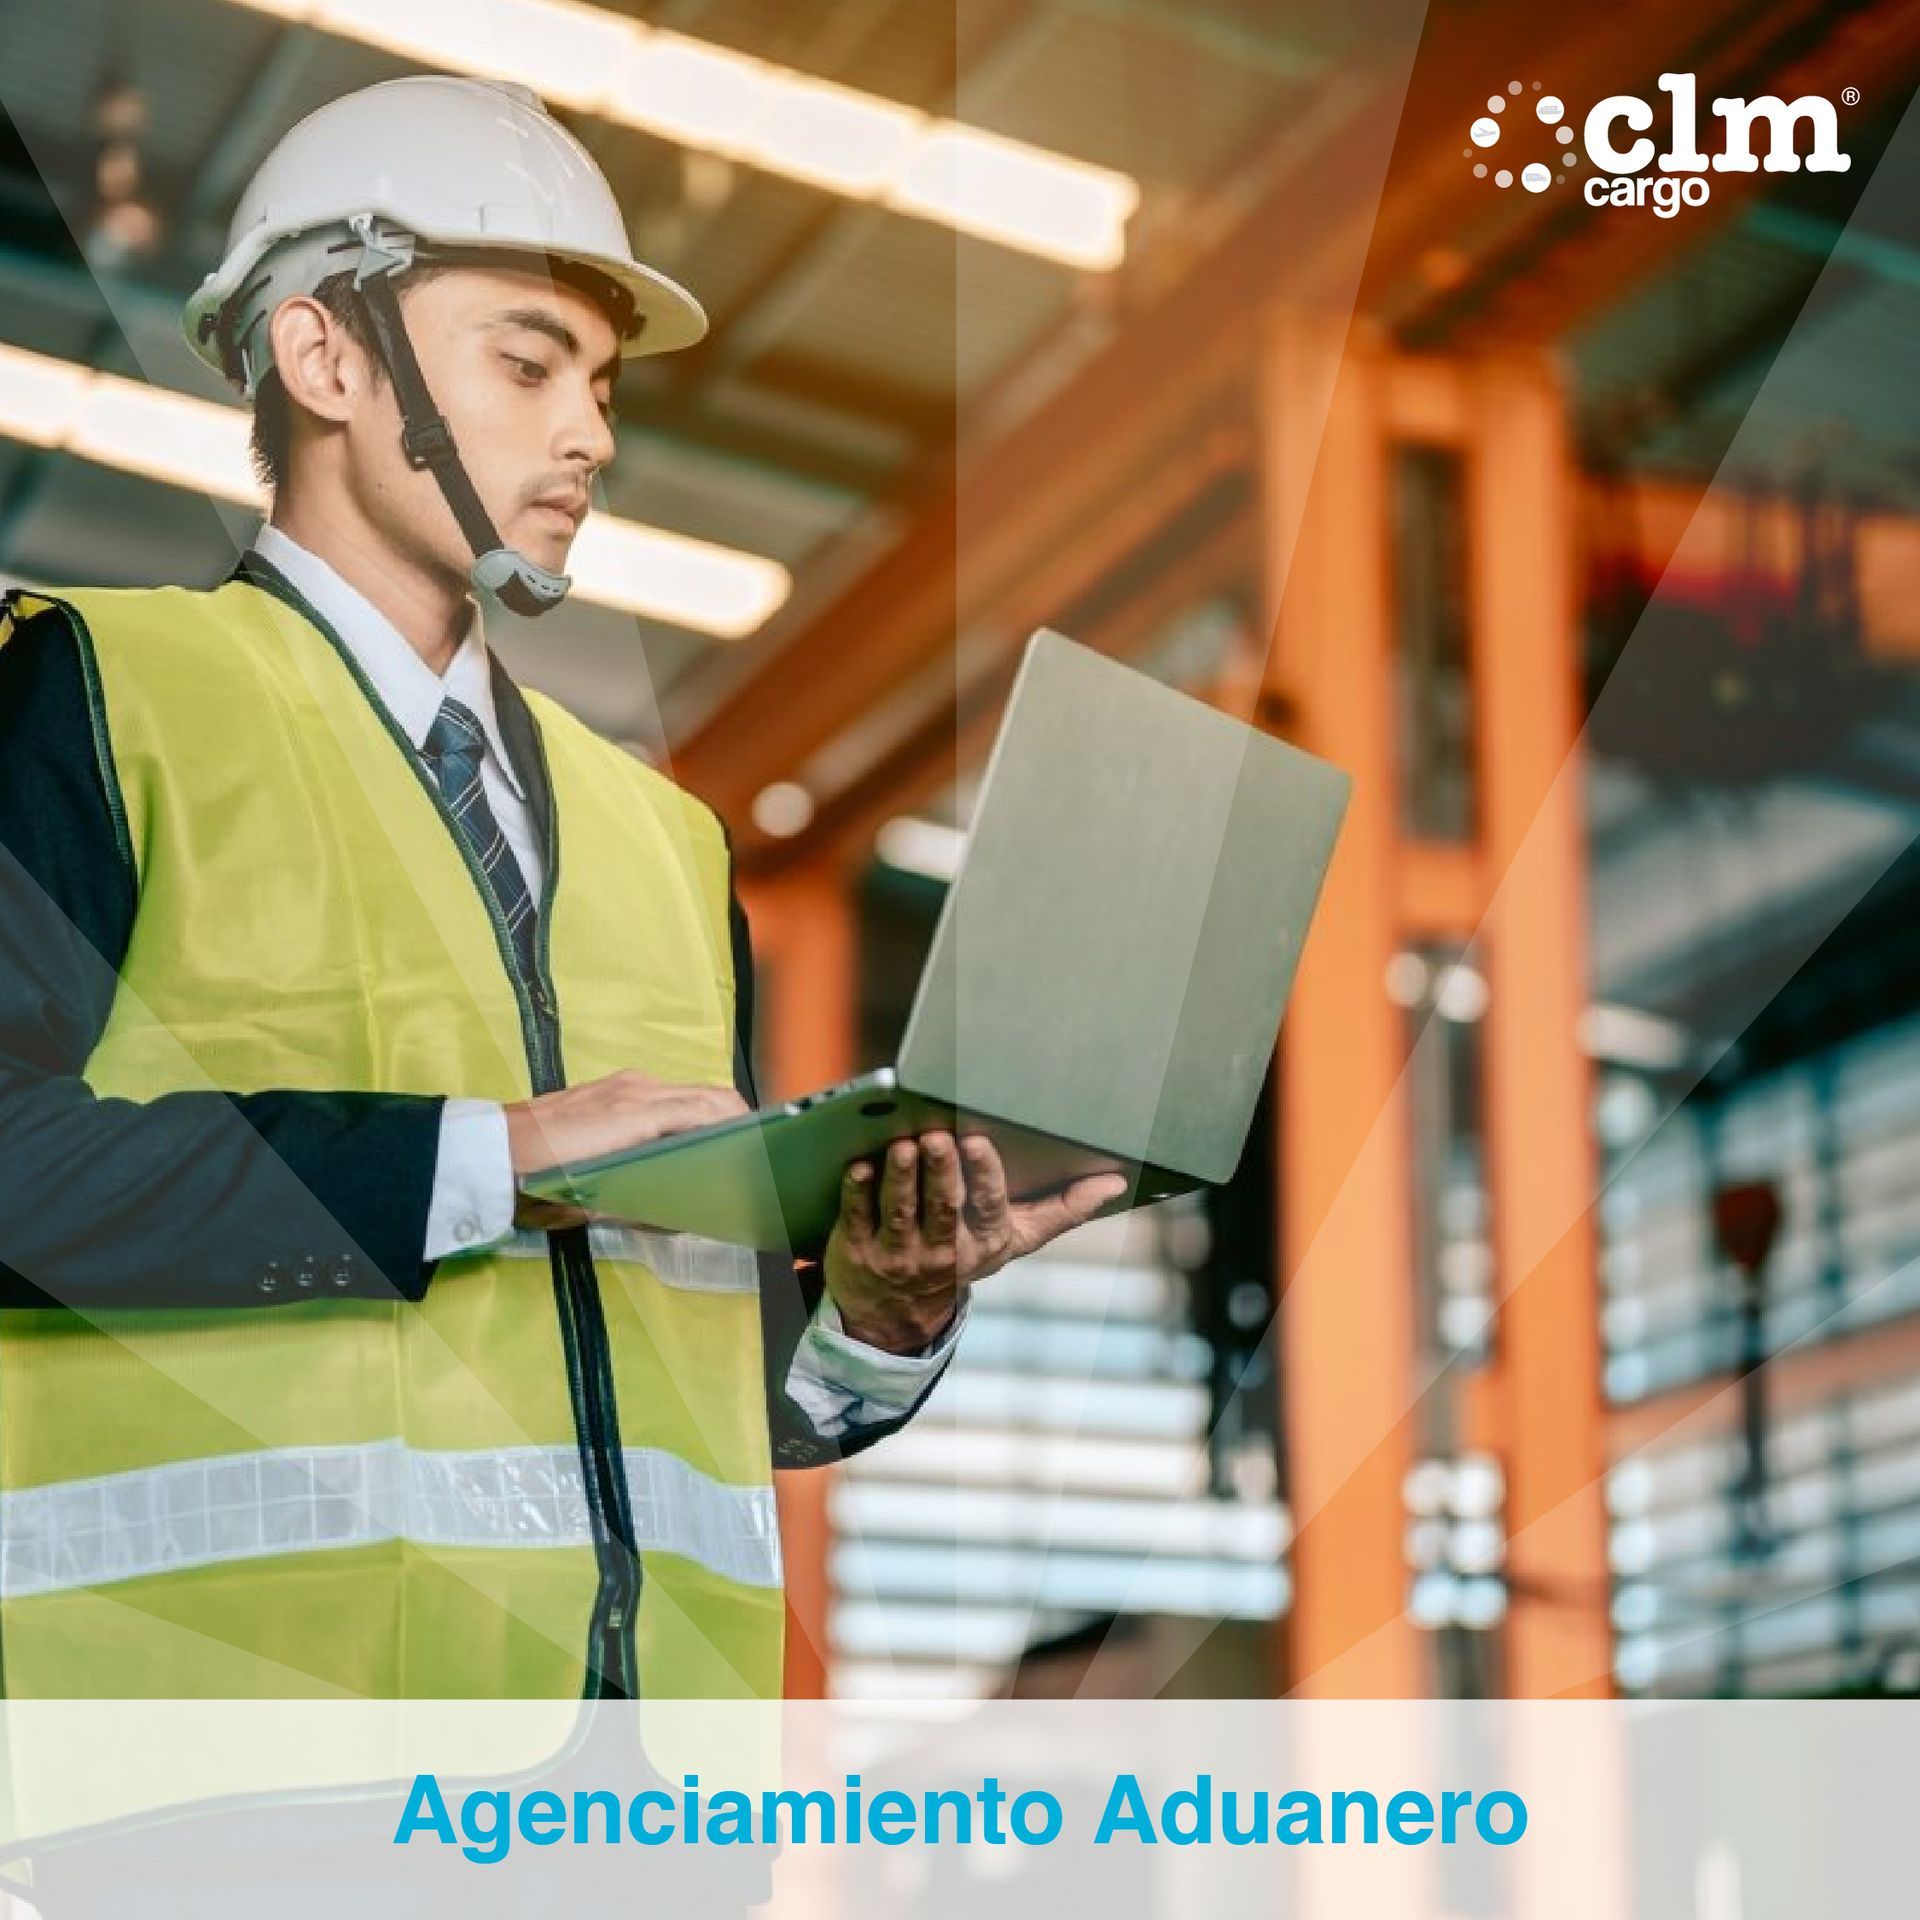 CLM Cargo Agenciamiento Aduanero
